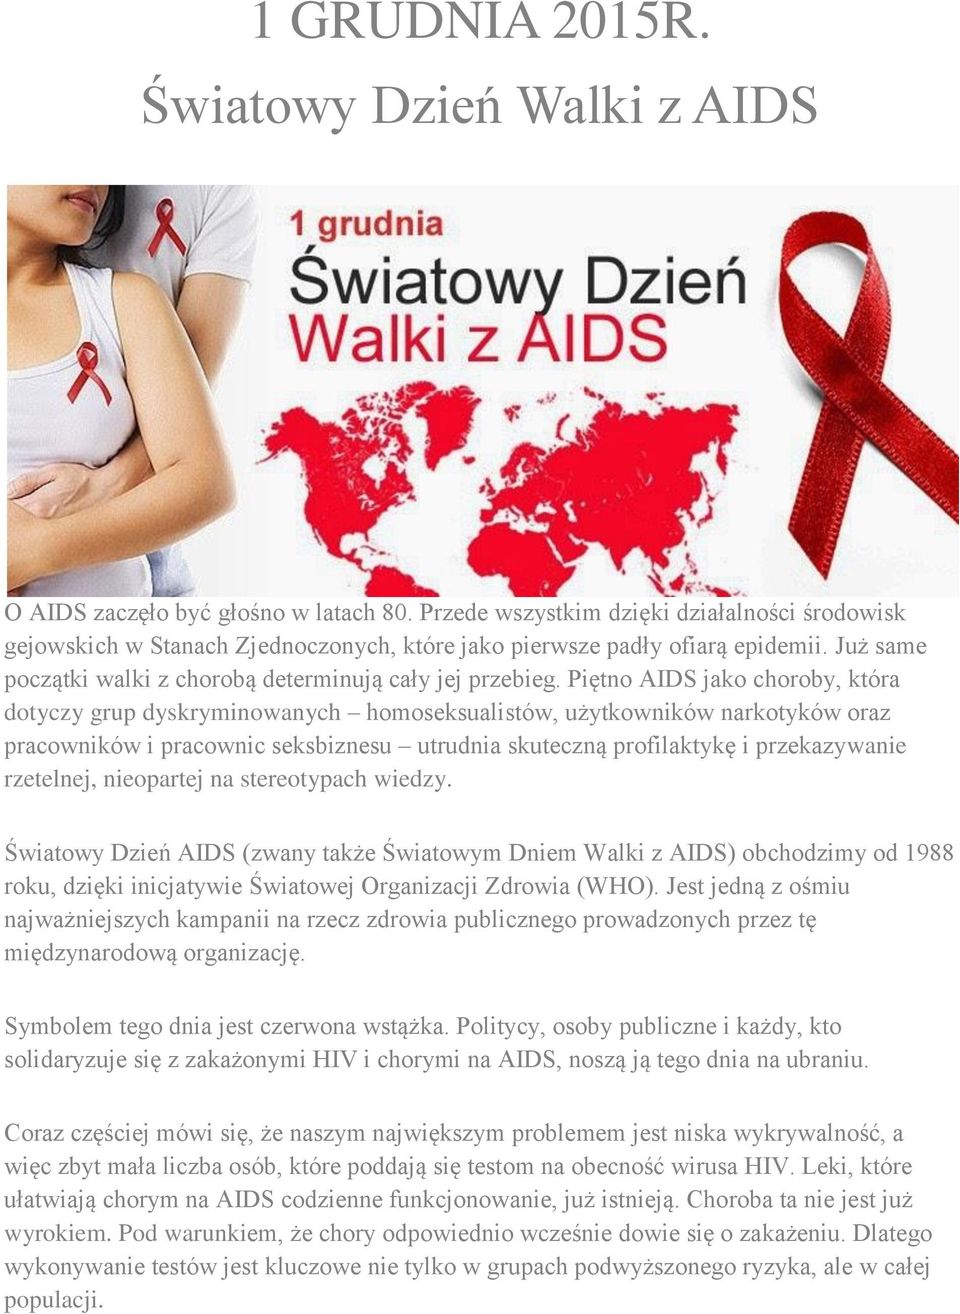 Piętno AIDS jako choroby, która dotyczy grup dyskryminowanych homoseksualistów, użytkowników narkotyków oraz pracowników i pracownic seksbiznesu utrudnia skuteczną profilaktykę i przekazywanie